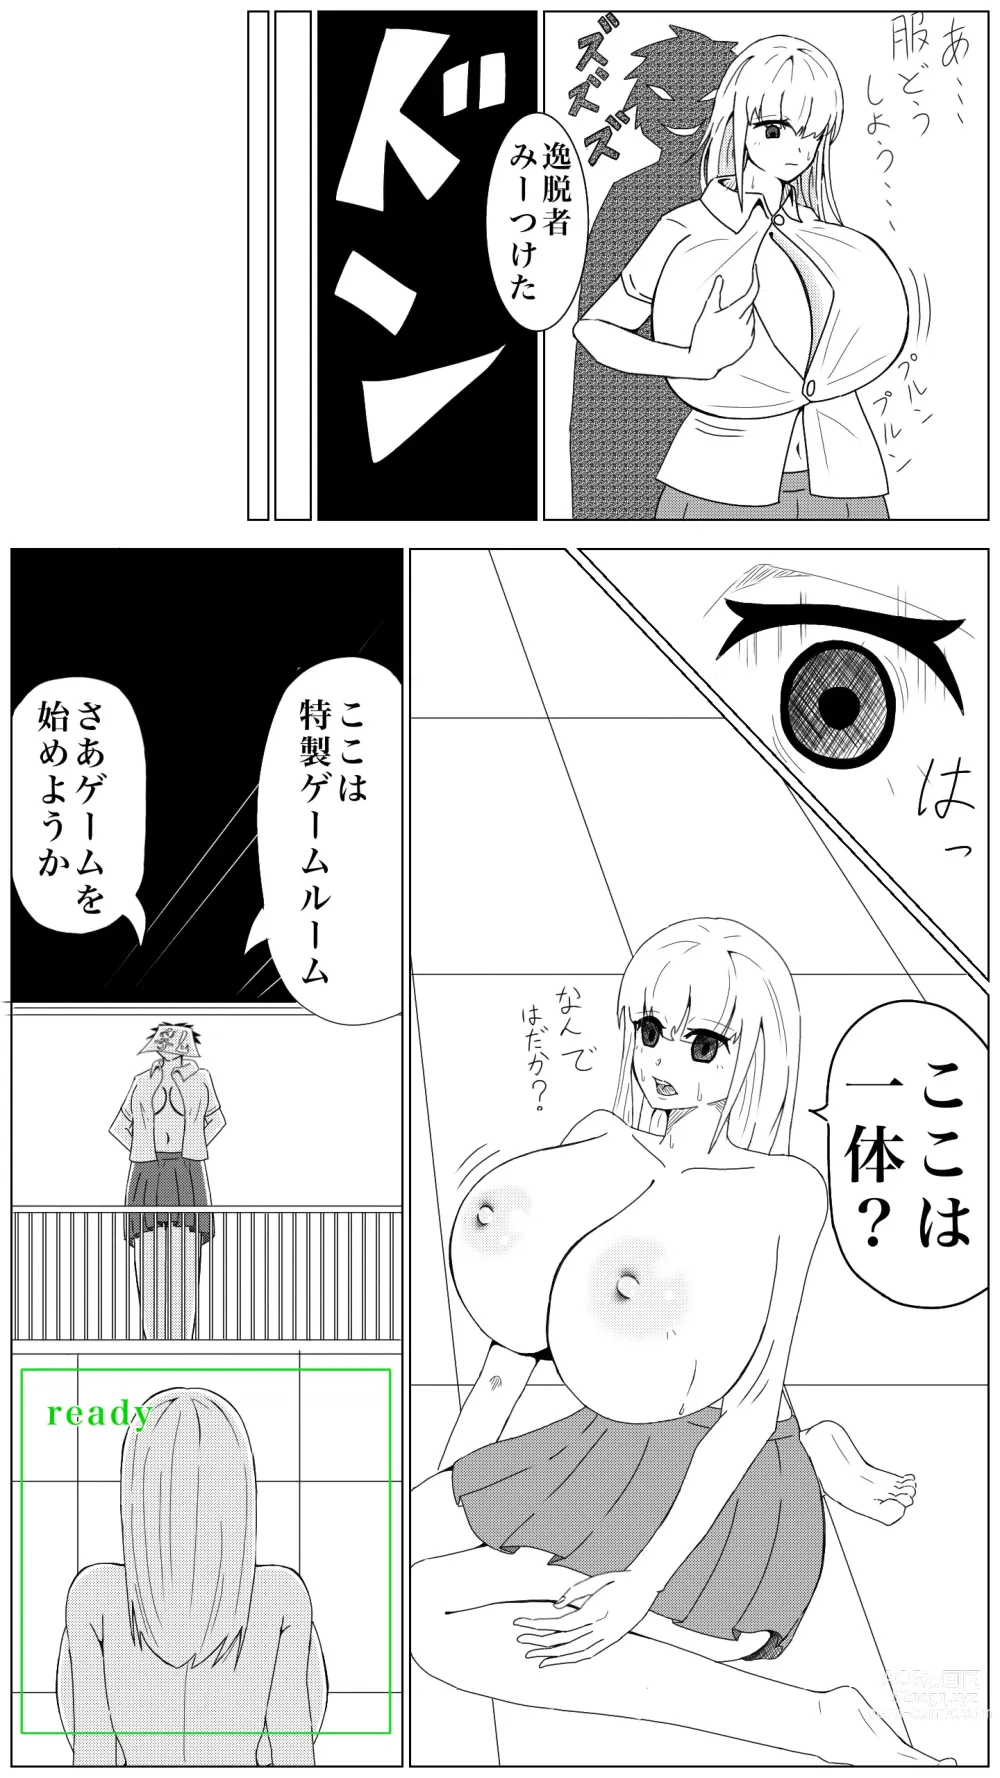 Page 2 of doujinshi Oppai Shiisougemu